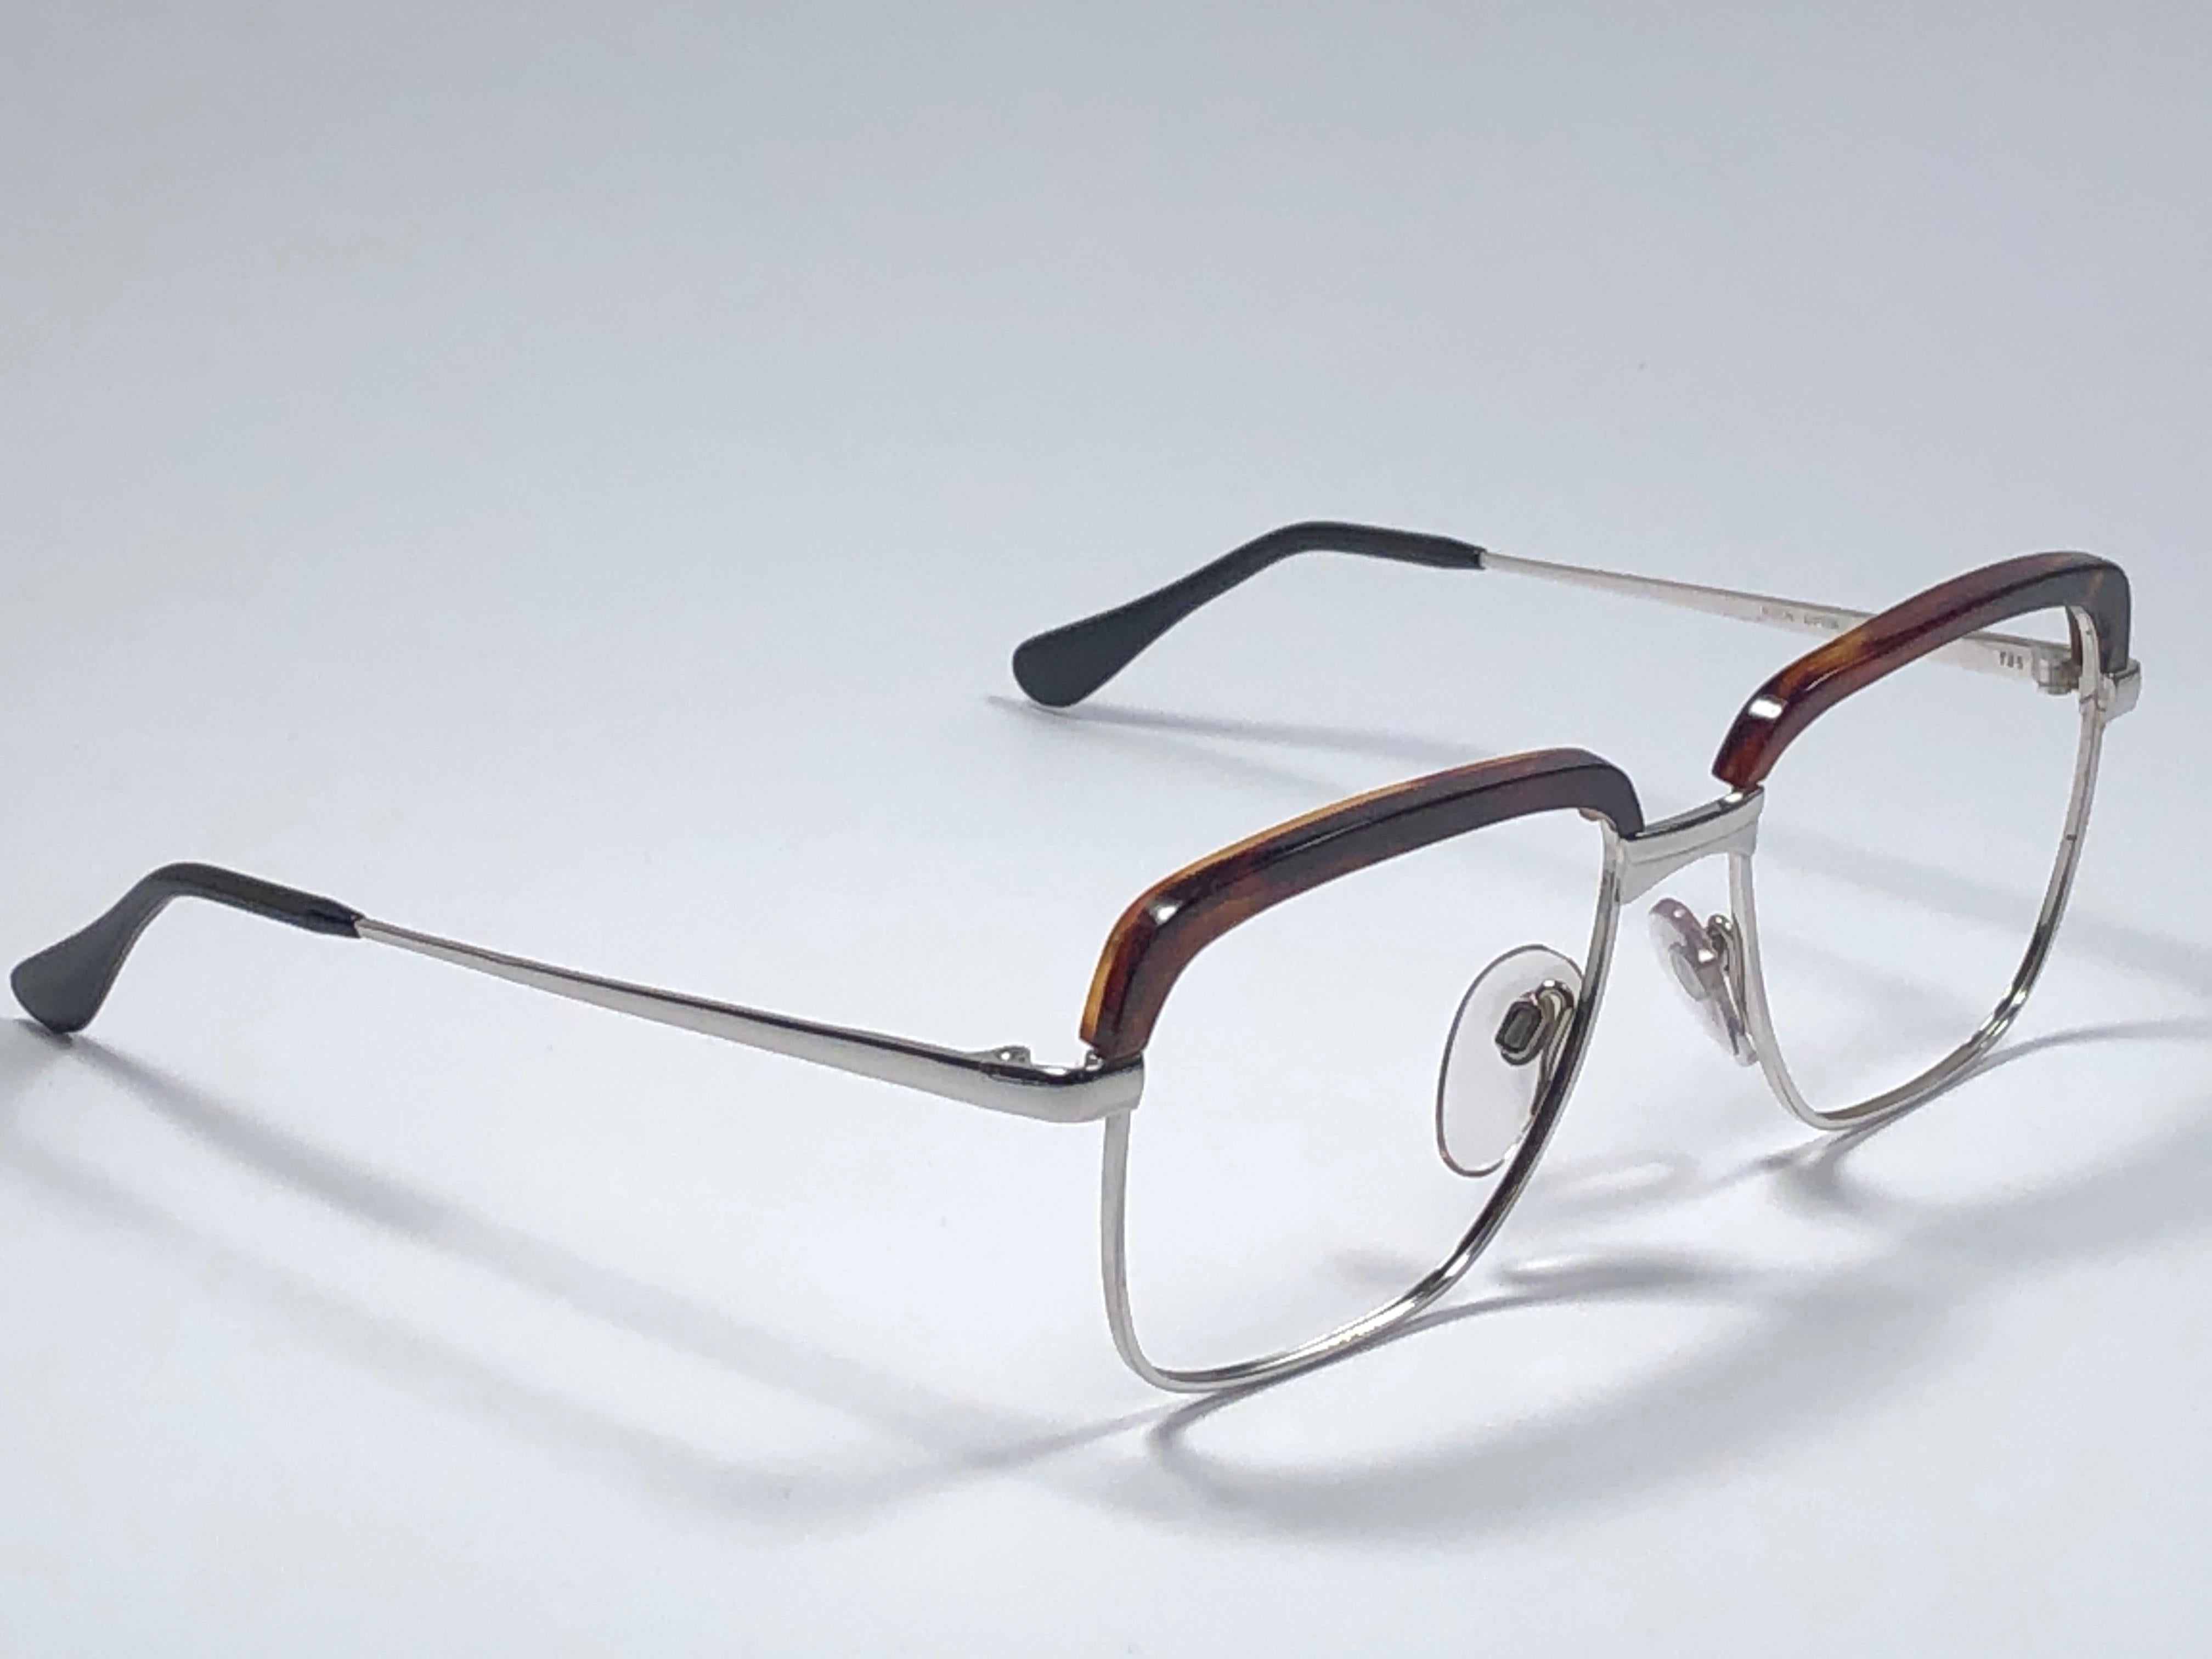 Nouvelle et rare monture Köln Optik combinant écaille de tortue véritable et argent. 

Convient à l'utilisation de lunettes de vue RX. 

Veuillez noter que cet article a près de 40 ans et peut présenter une certaine usure due au stockage. 

Neuf,